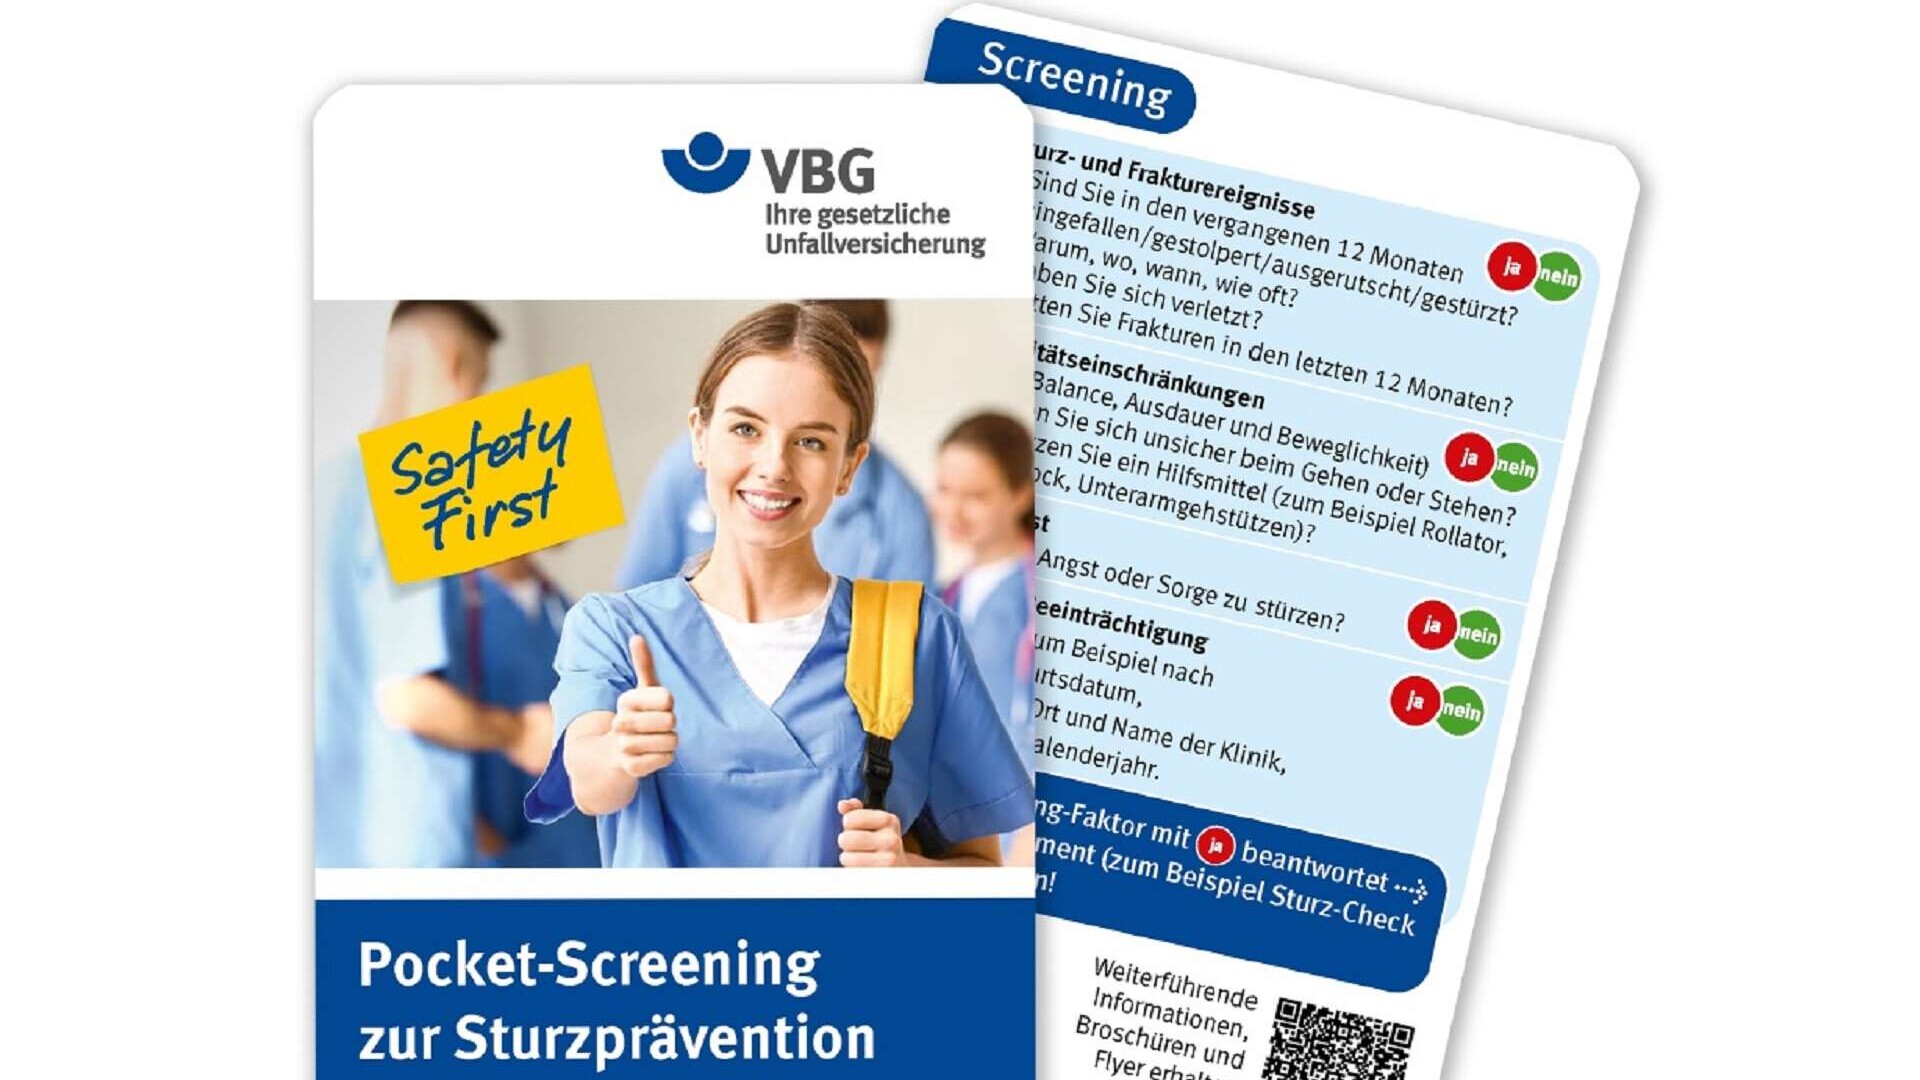 Pocket-Screening zur Sturzprävention